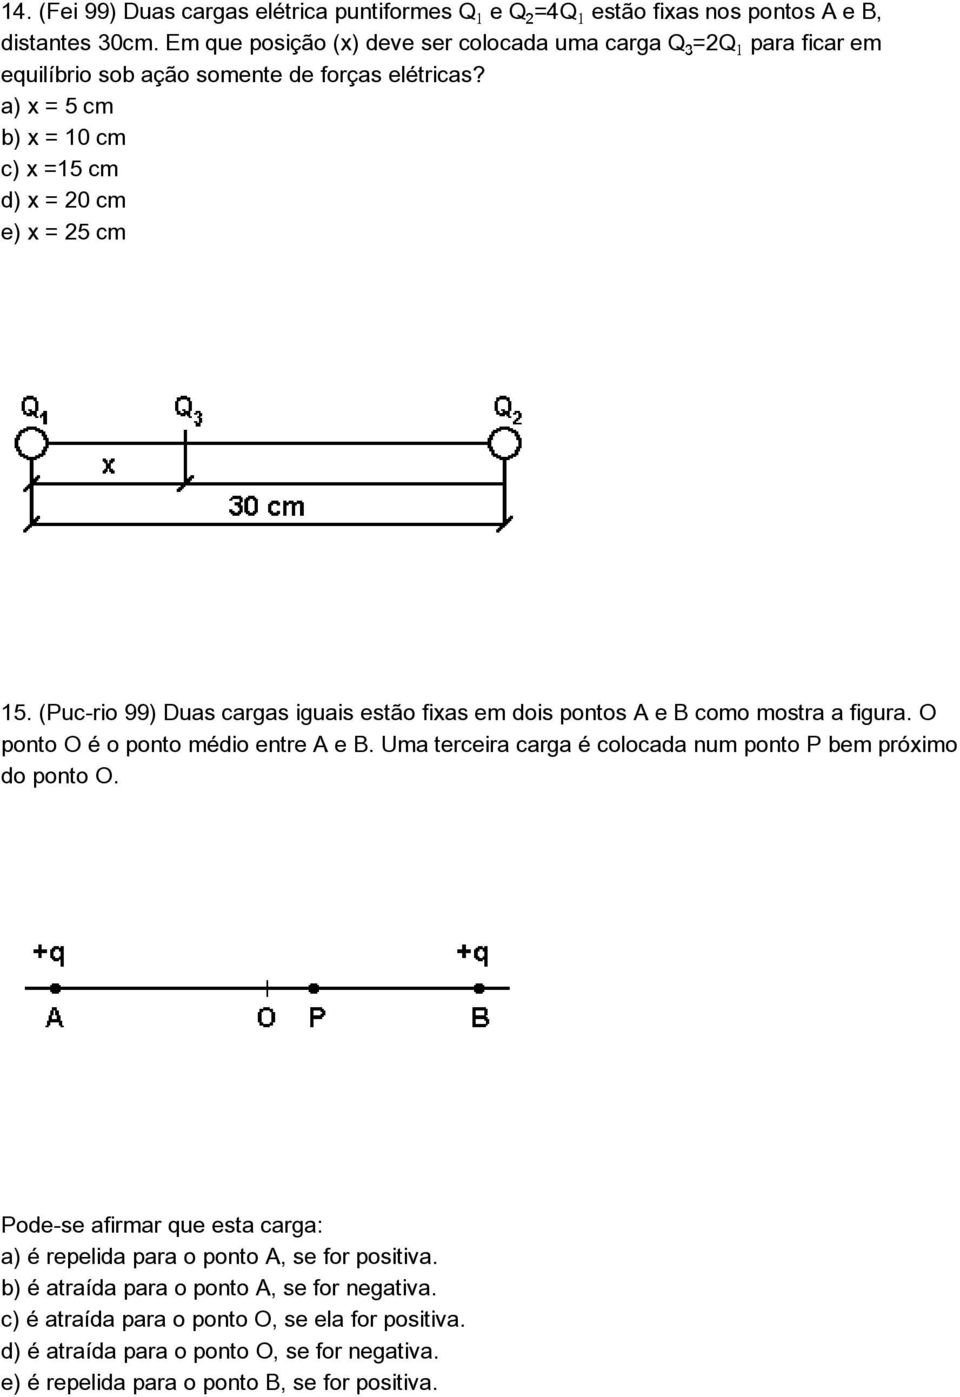 (Puc-rio 99) Duas cargas iguais estão fixas em dois pontos A e B como mostra a figura. O ponto O é o ponto médio entre A e B.